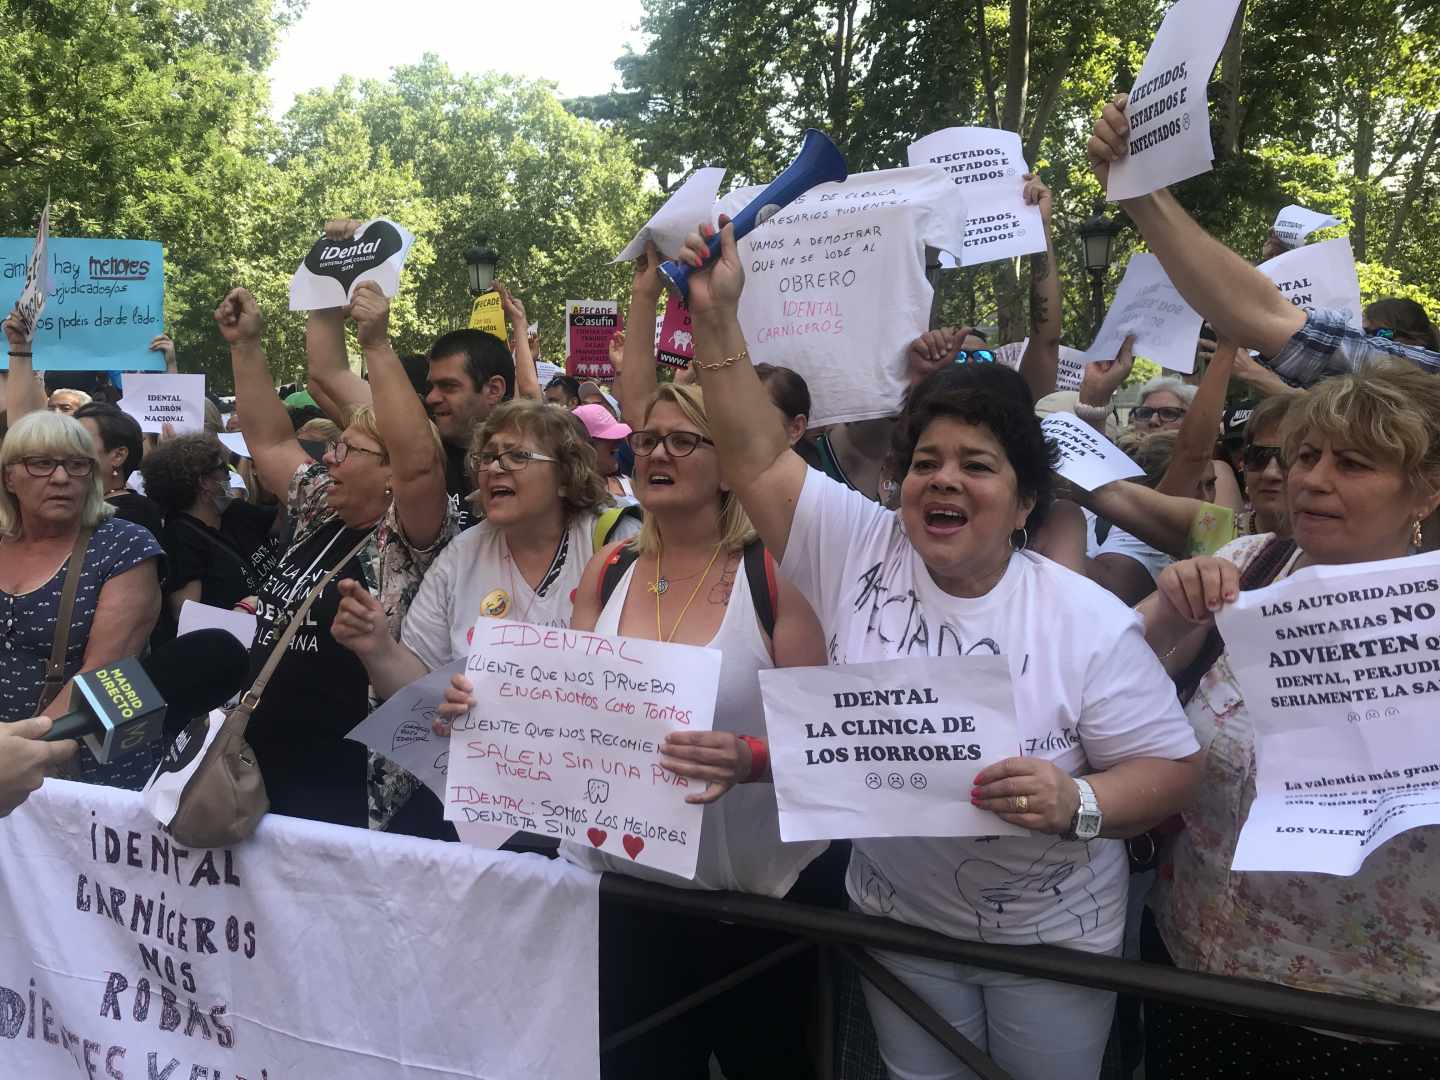 Imagen de la manifestación de afectados de las clínicas dentales iDental en la manifestación frente al Ministerio de Sanidad.